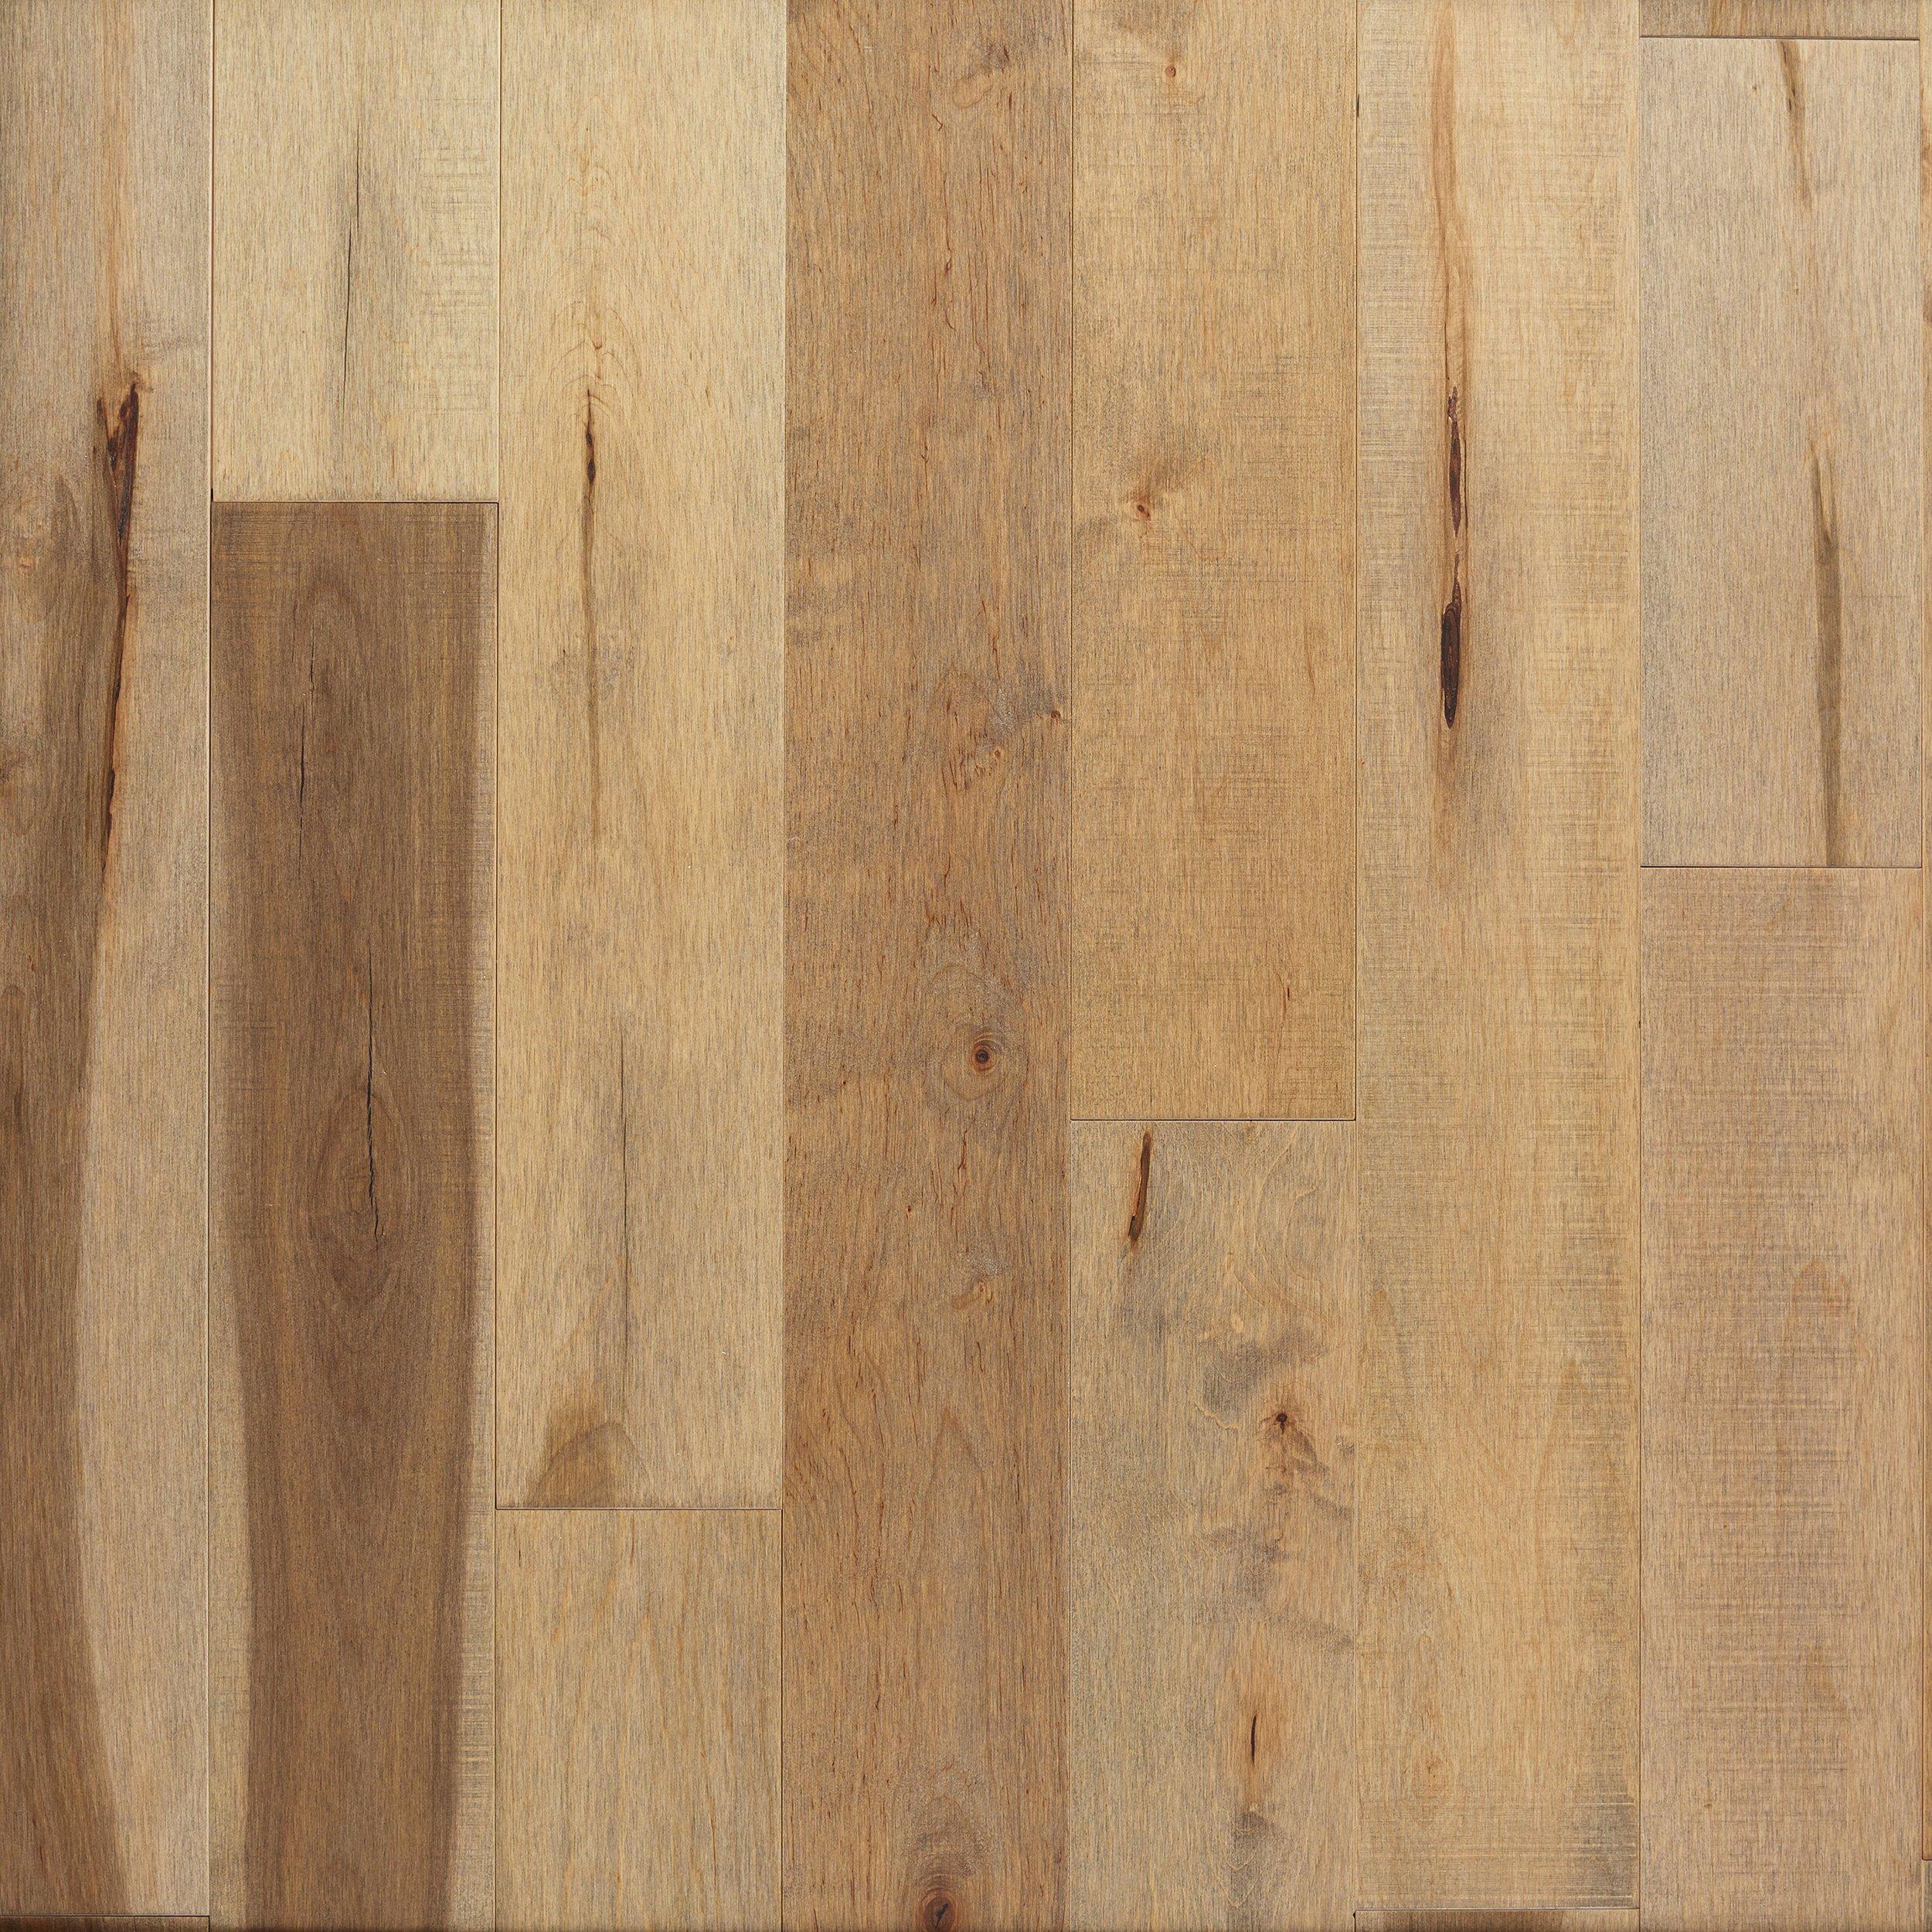 Hazel Maple Distressed Solid Hardwood, Distressed Maple Hardwood Flooring